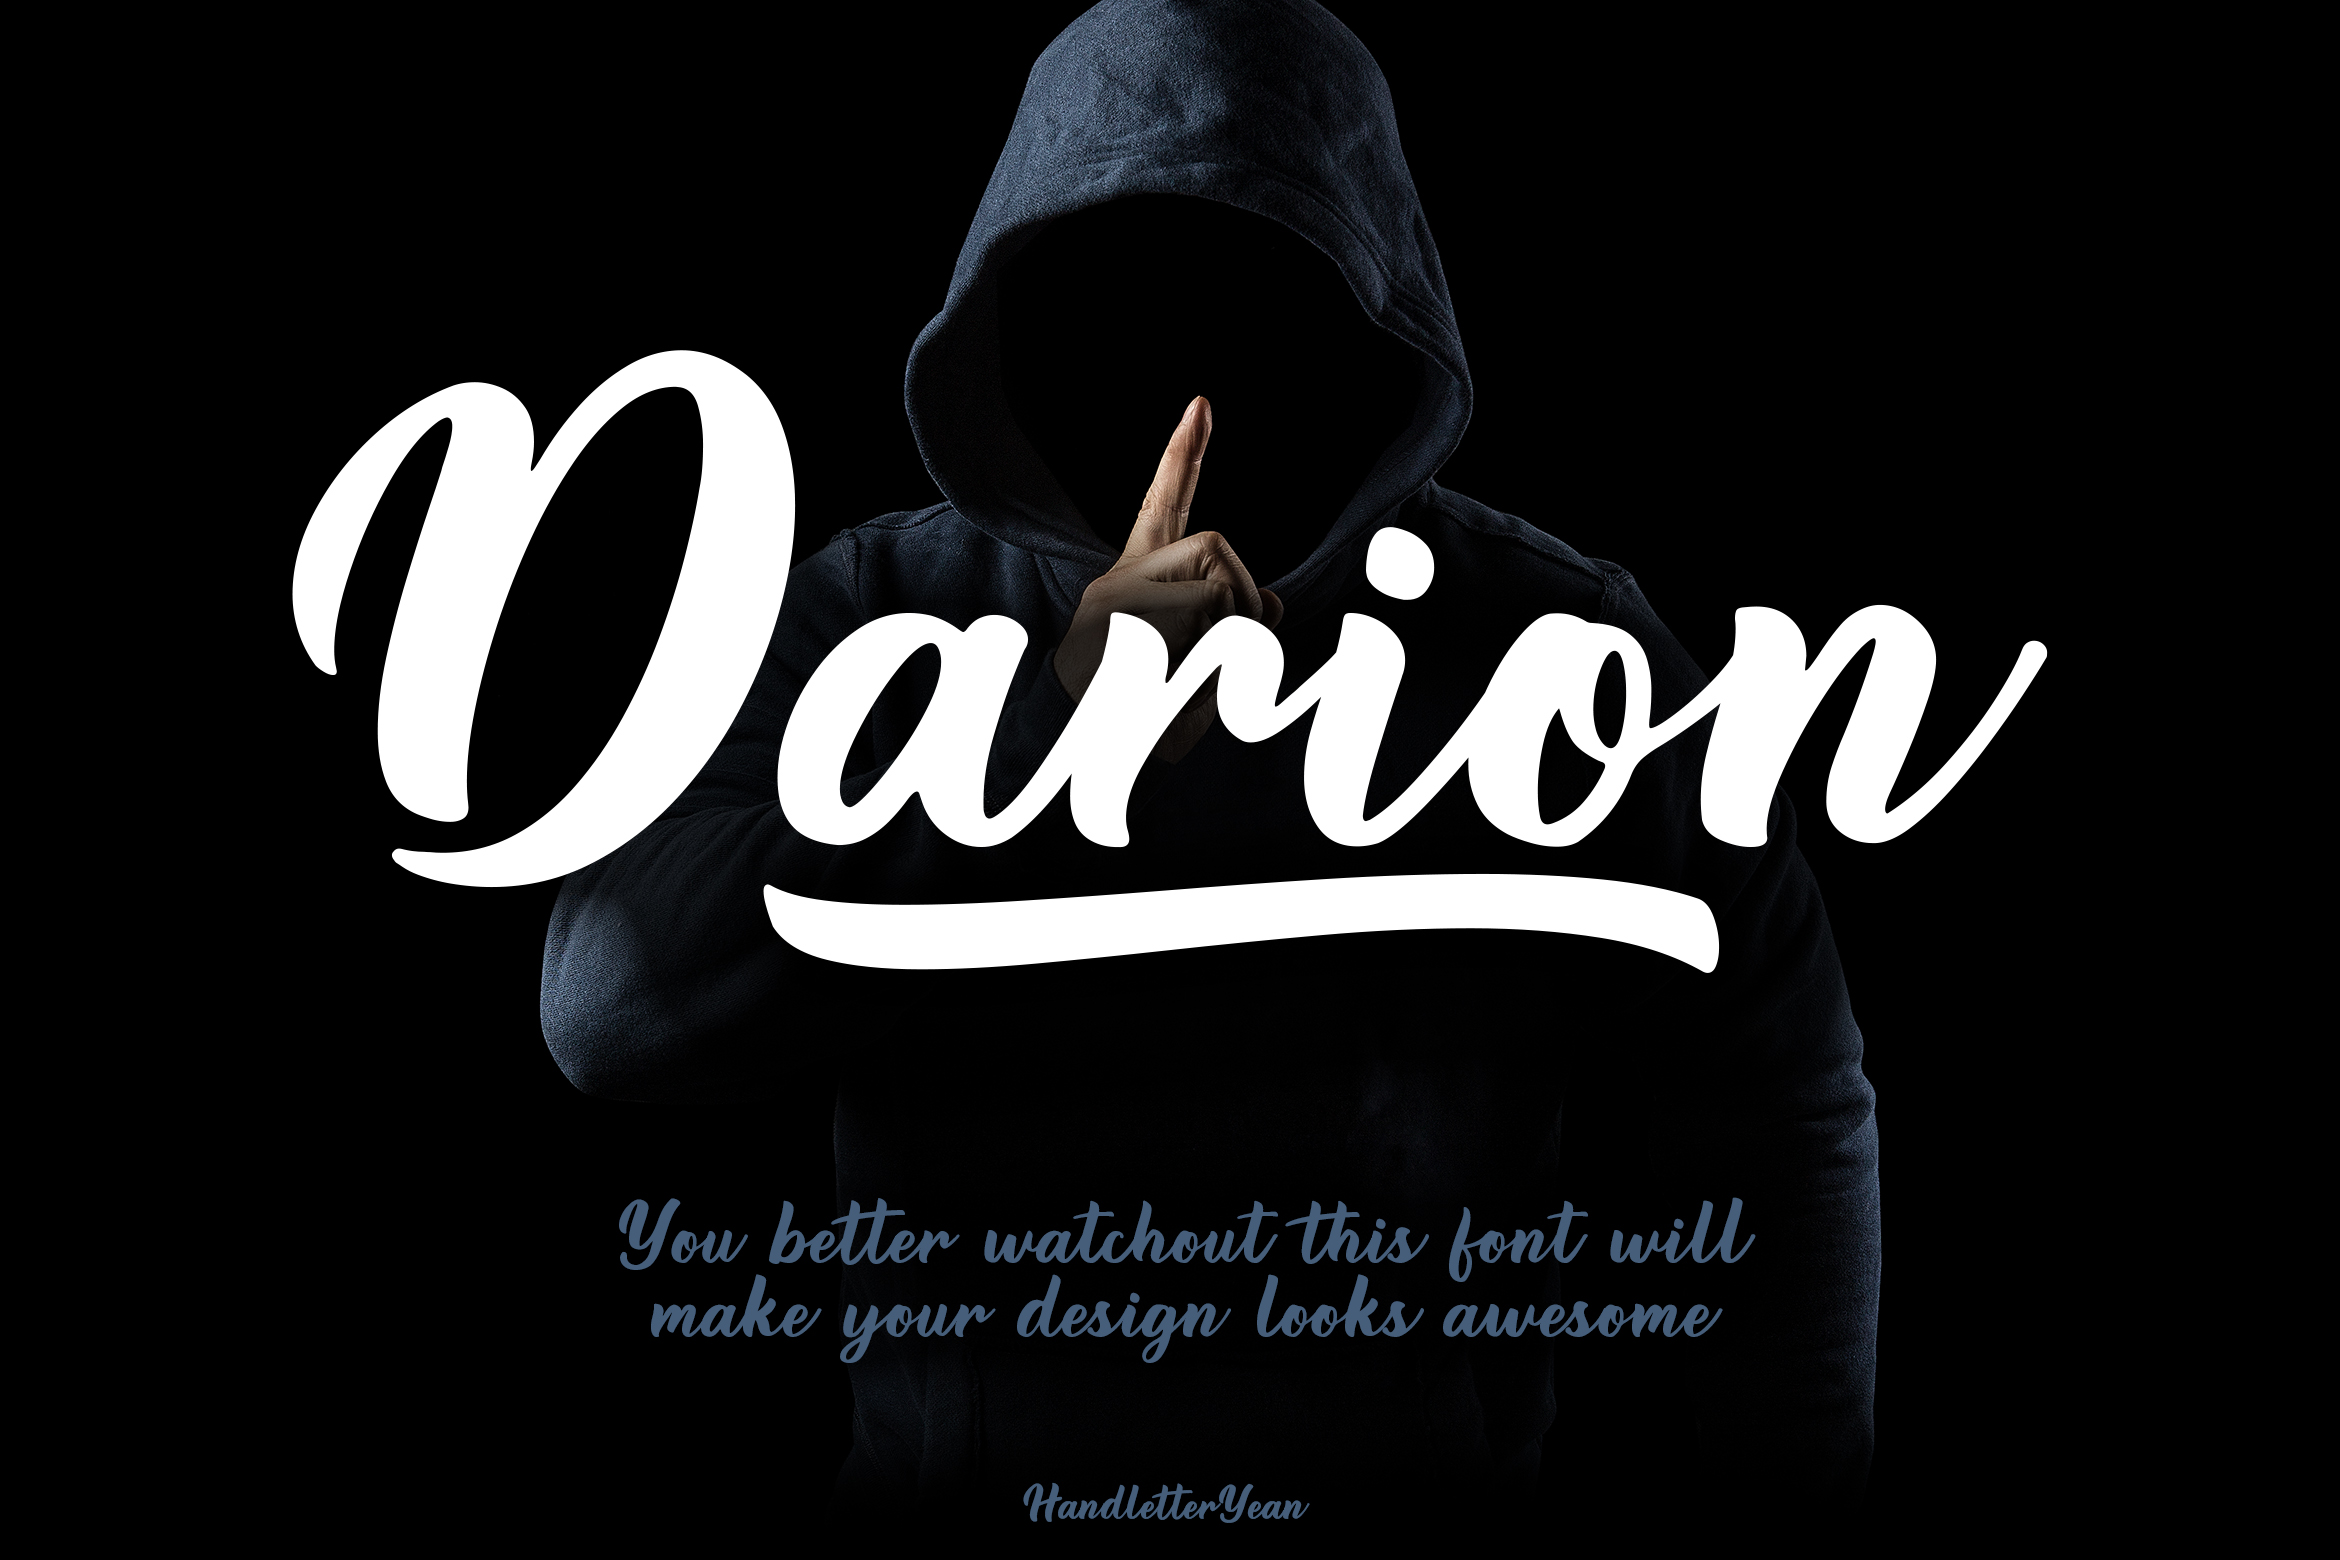 Darion